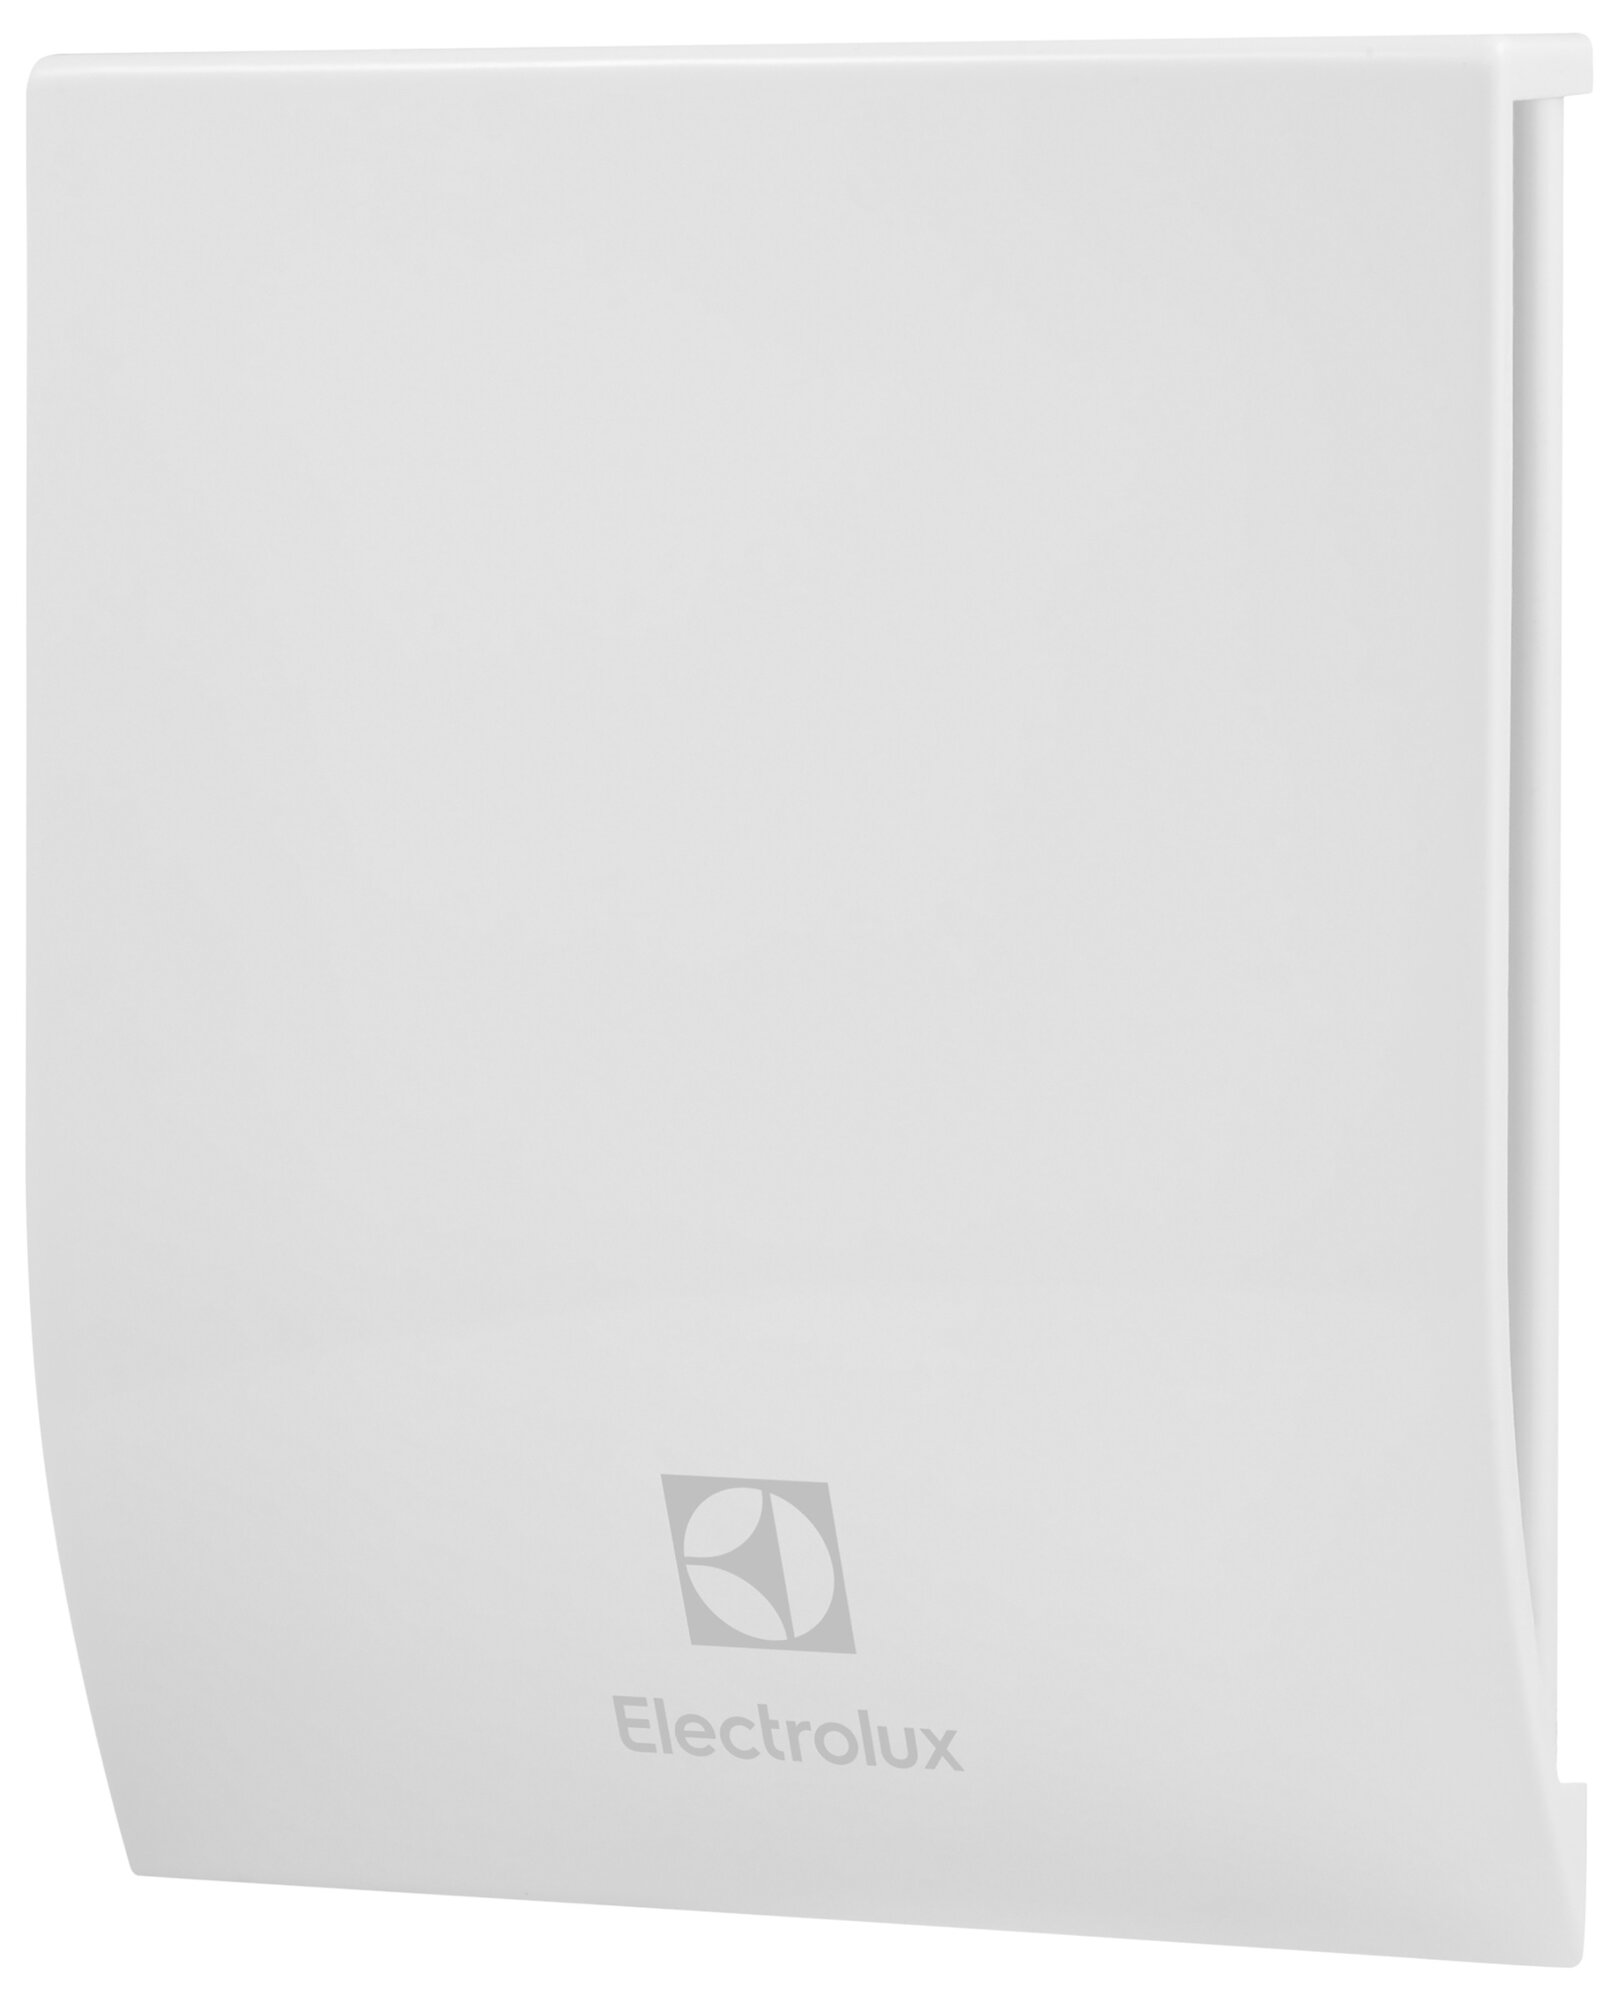 Вентилятор осевой вытяжной Electrolux EAFM-100TH D100 мм 33 дБ 85 м3/ч таймер гигрометр цвет белый - фото №1